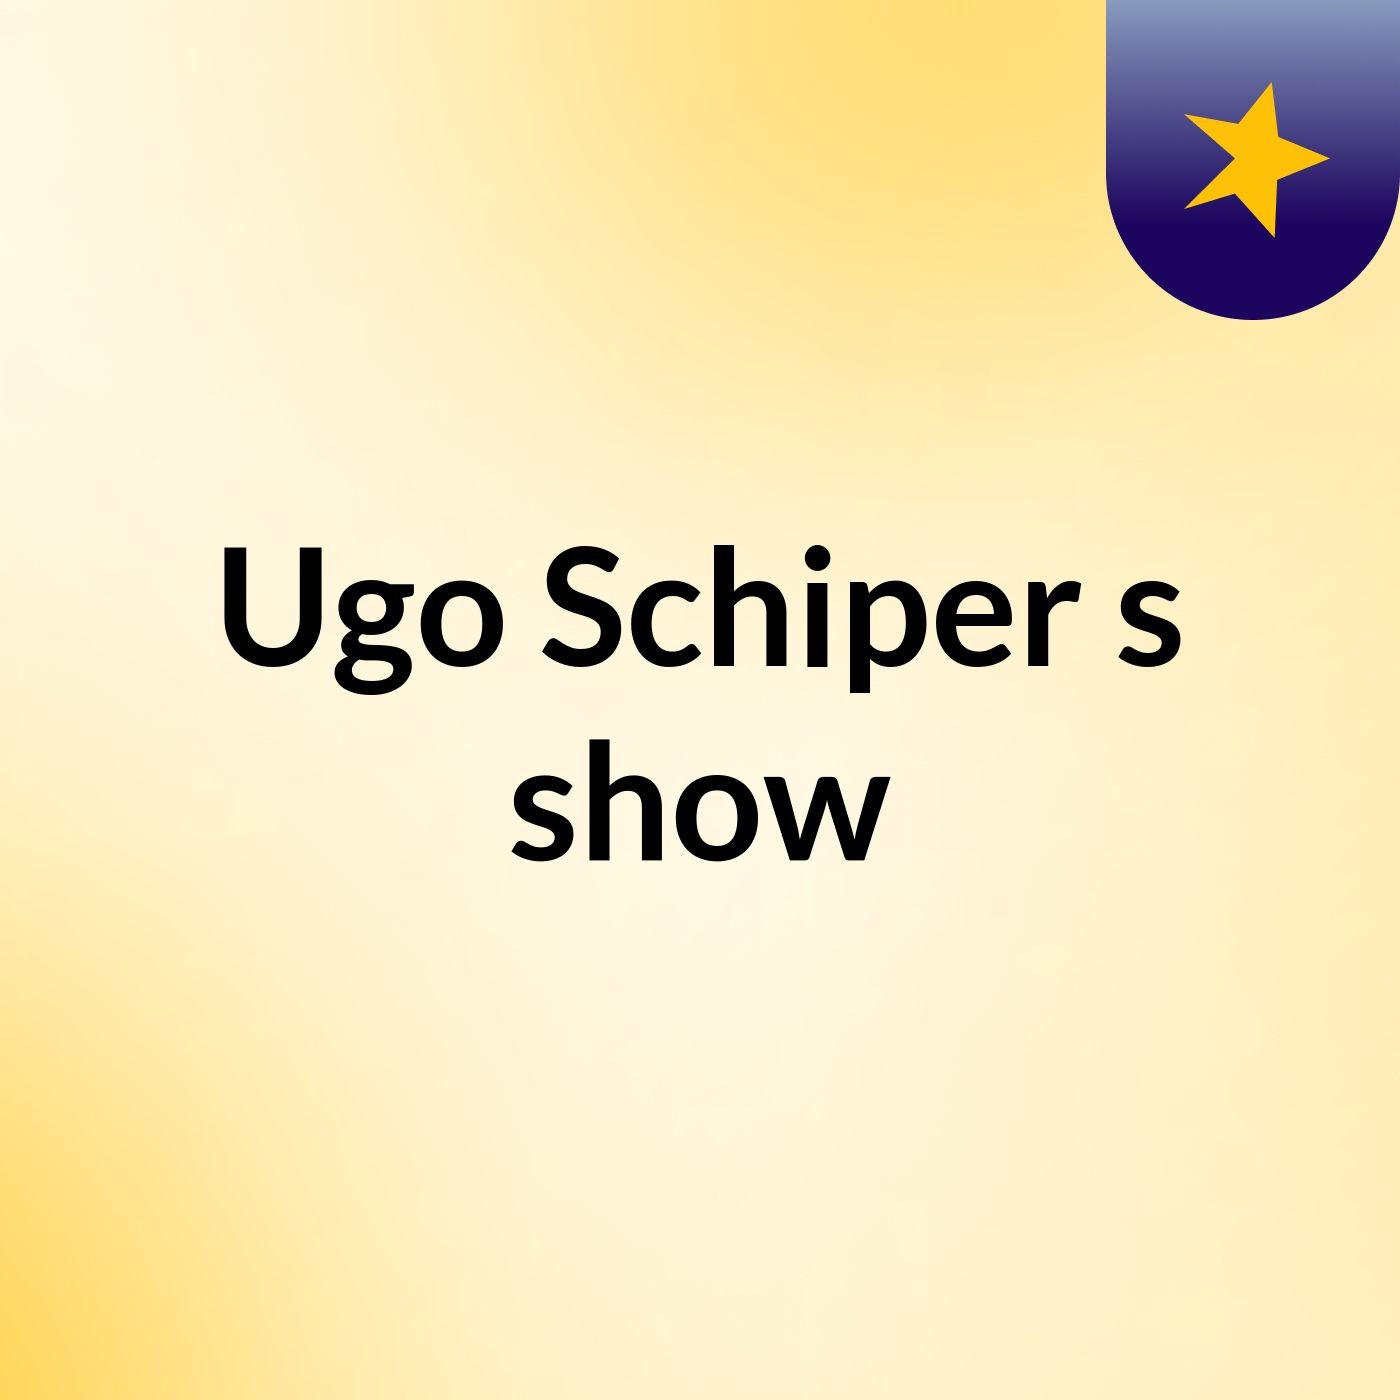 Ugo Schiper's show